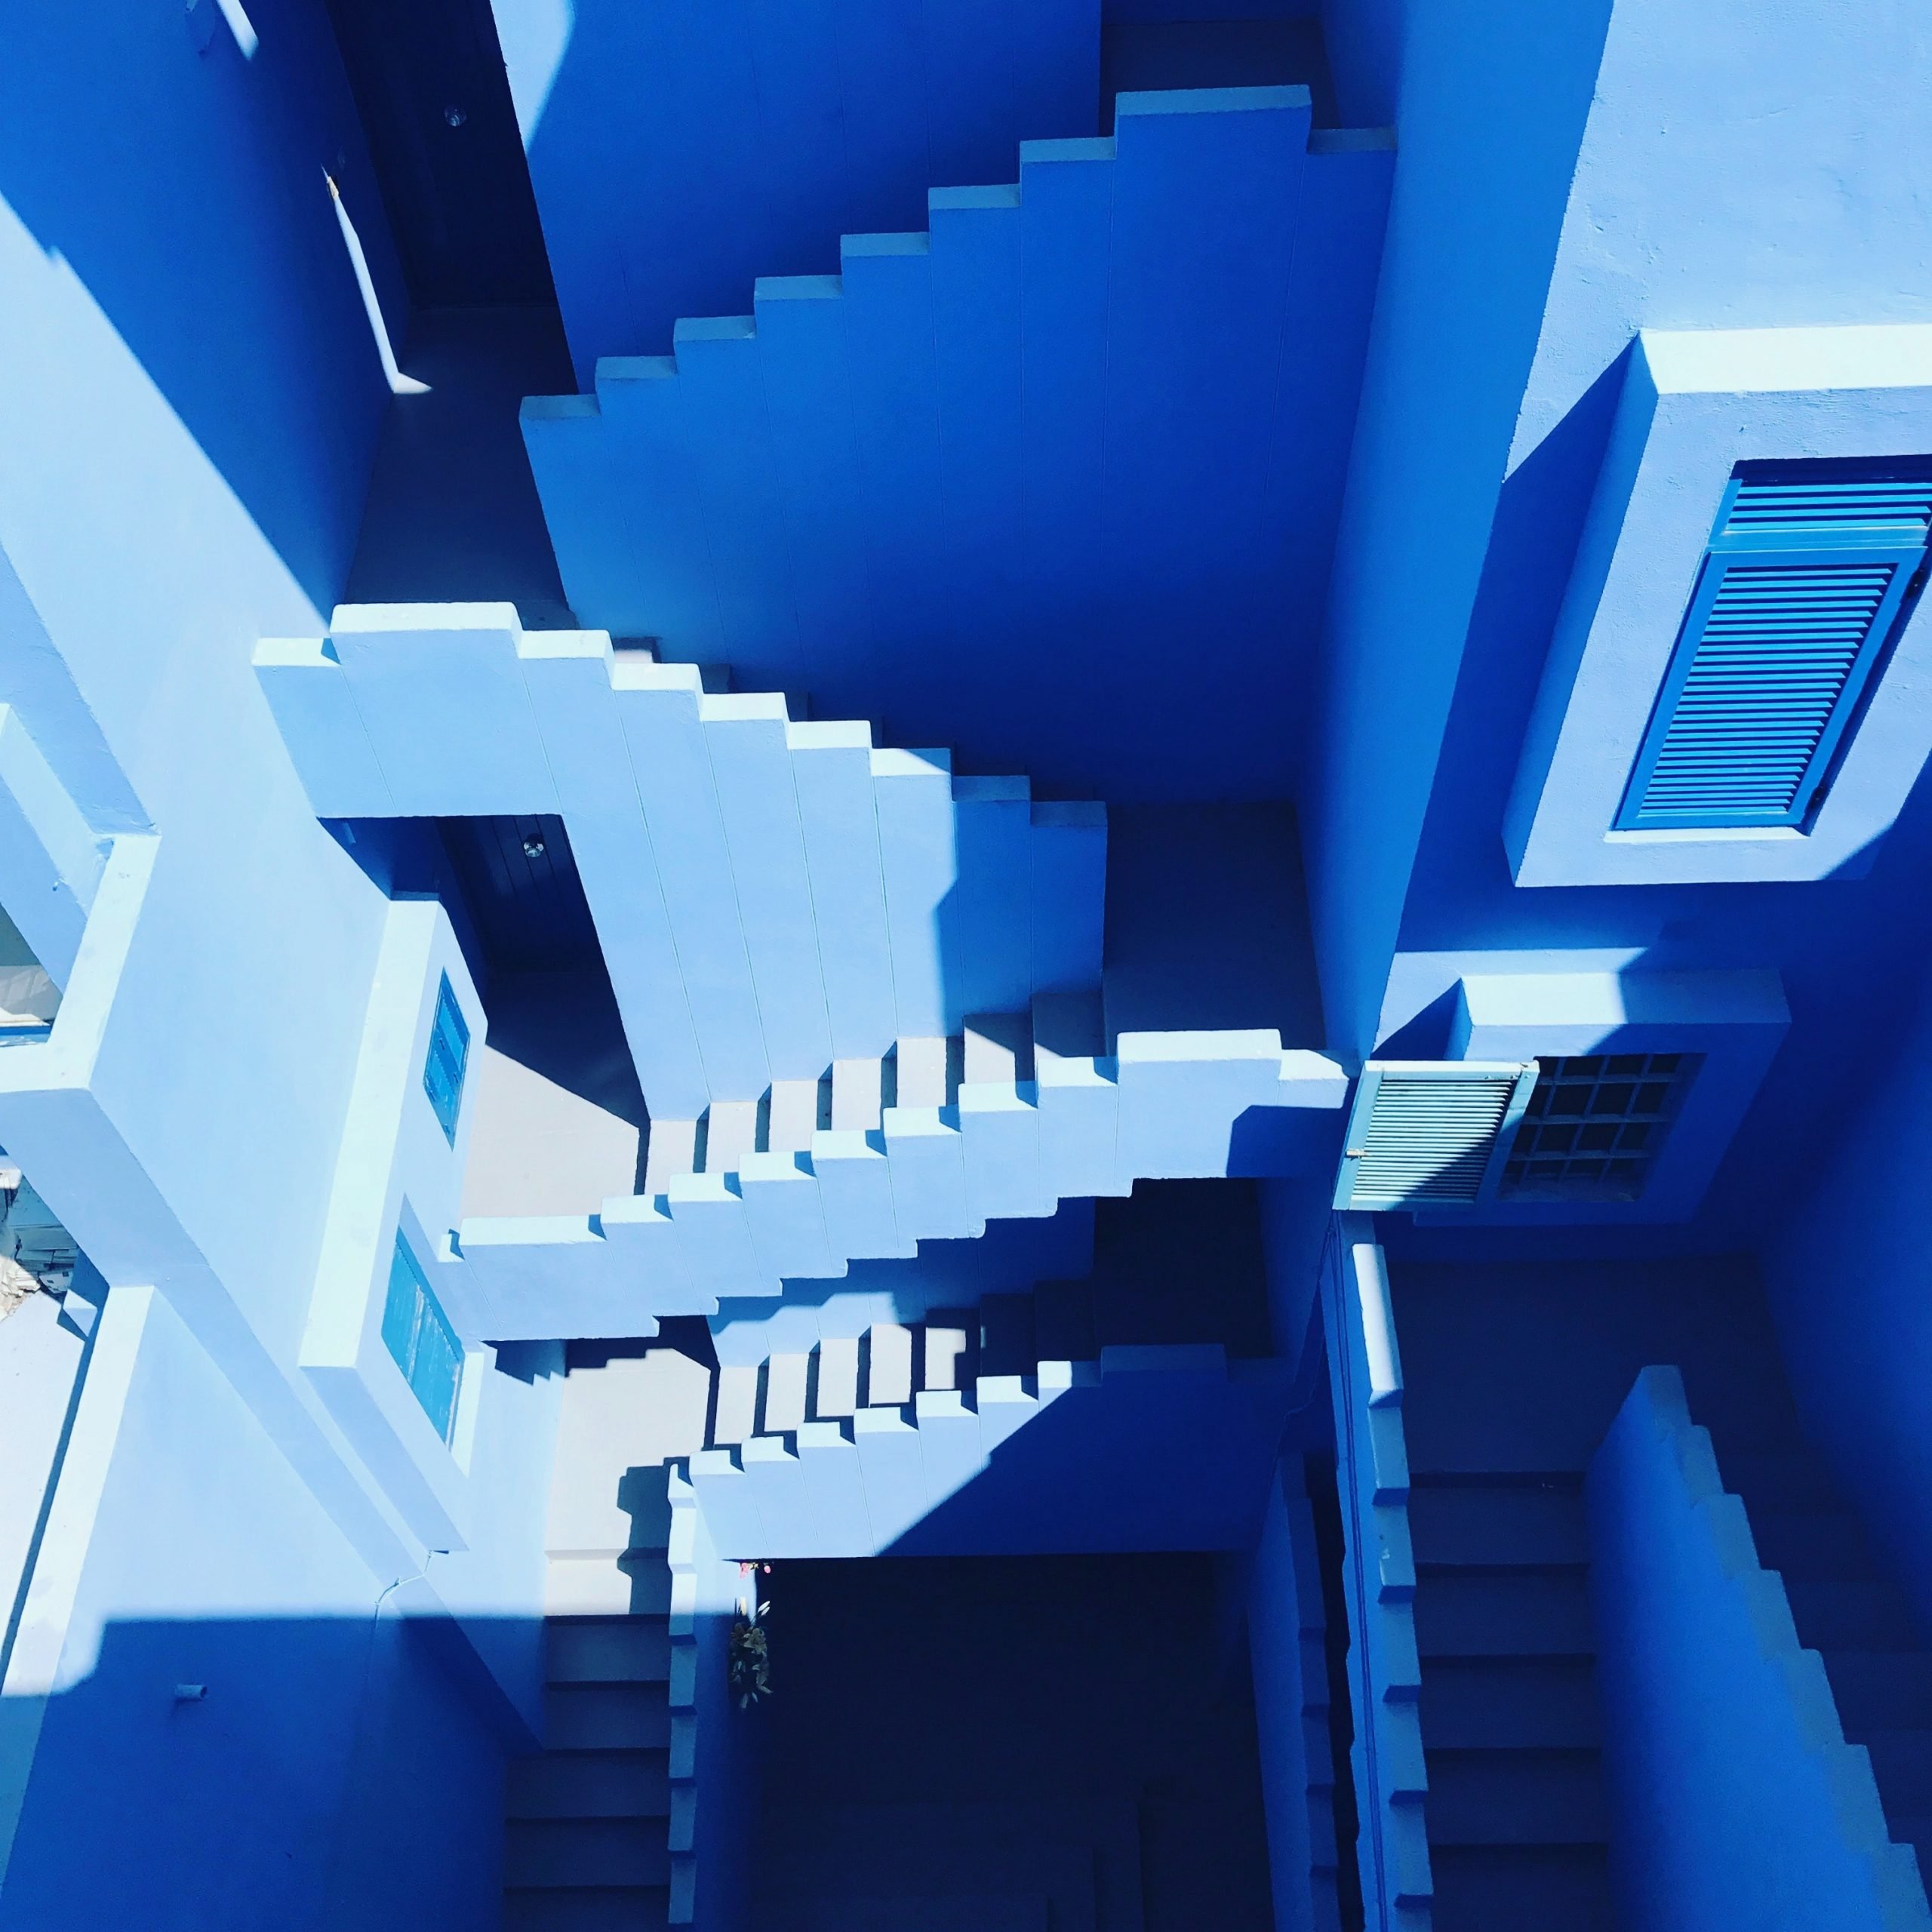 Light blue stairwell maze